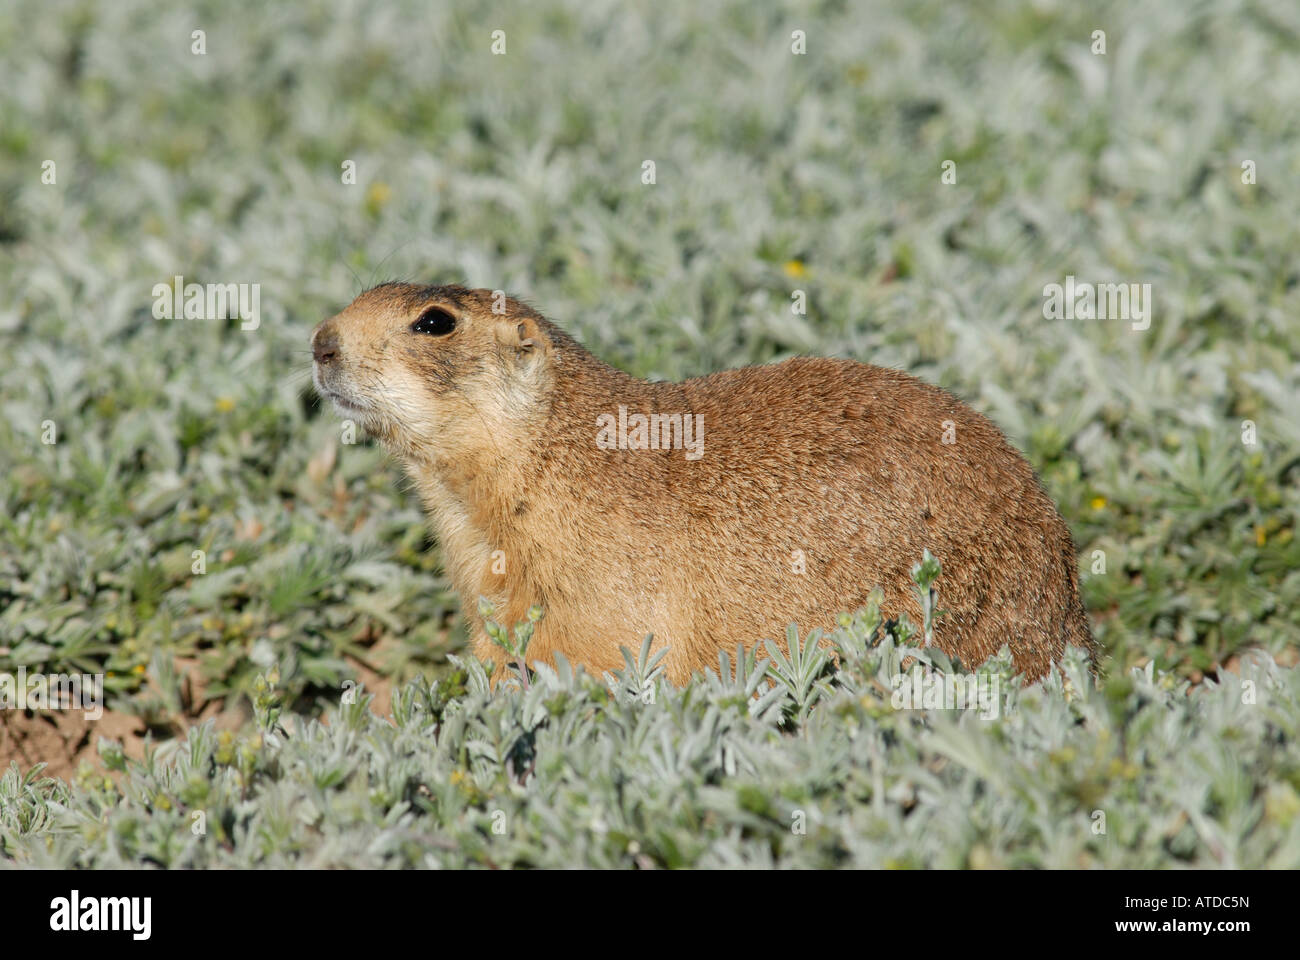 Stock photo profile of a Utah prairie dog. Stock Photo